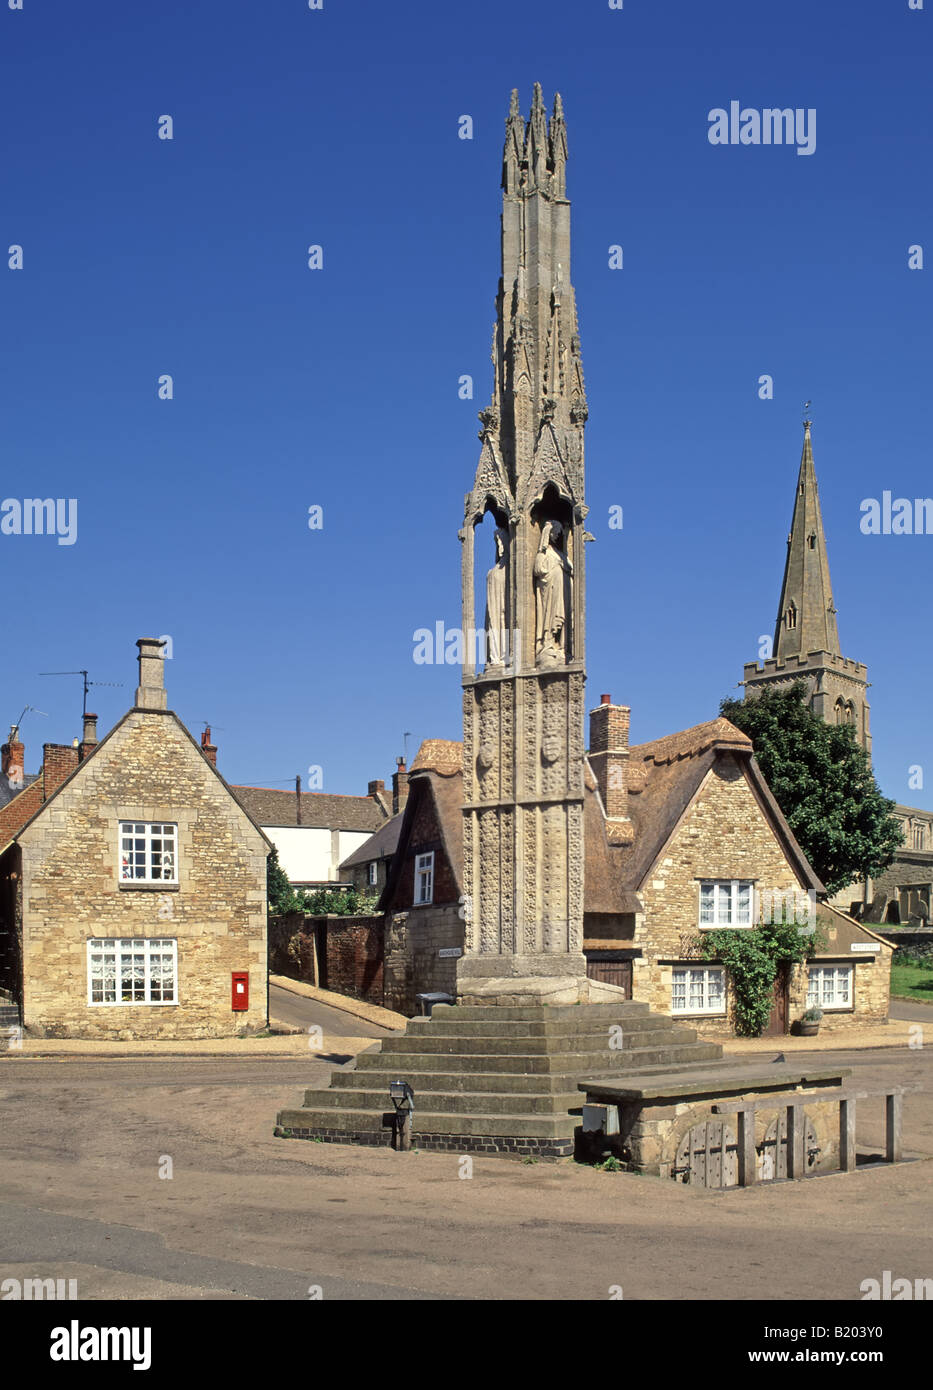 Das Geddington Eleanor Cross historische Denkmal erinnert an Eleanor of Castile Ehefrau von König Eduard I. markiert die Sargroute von Northamptonshire nach London Stockfoto